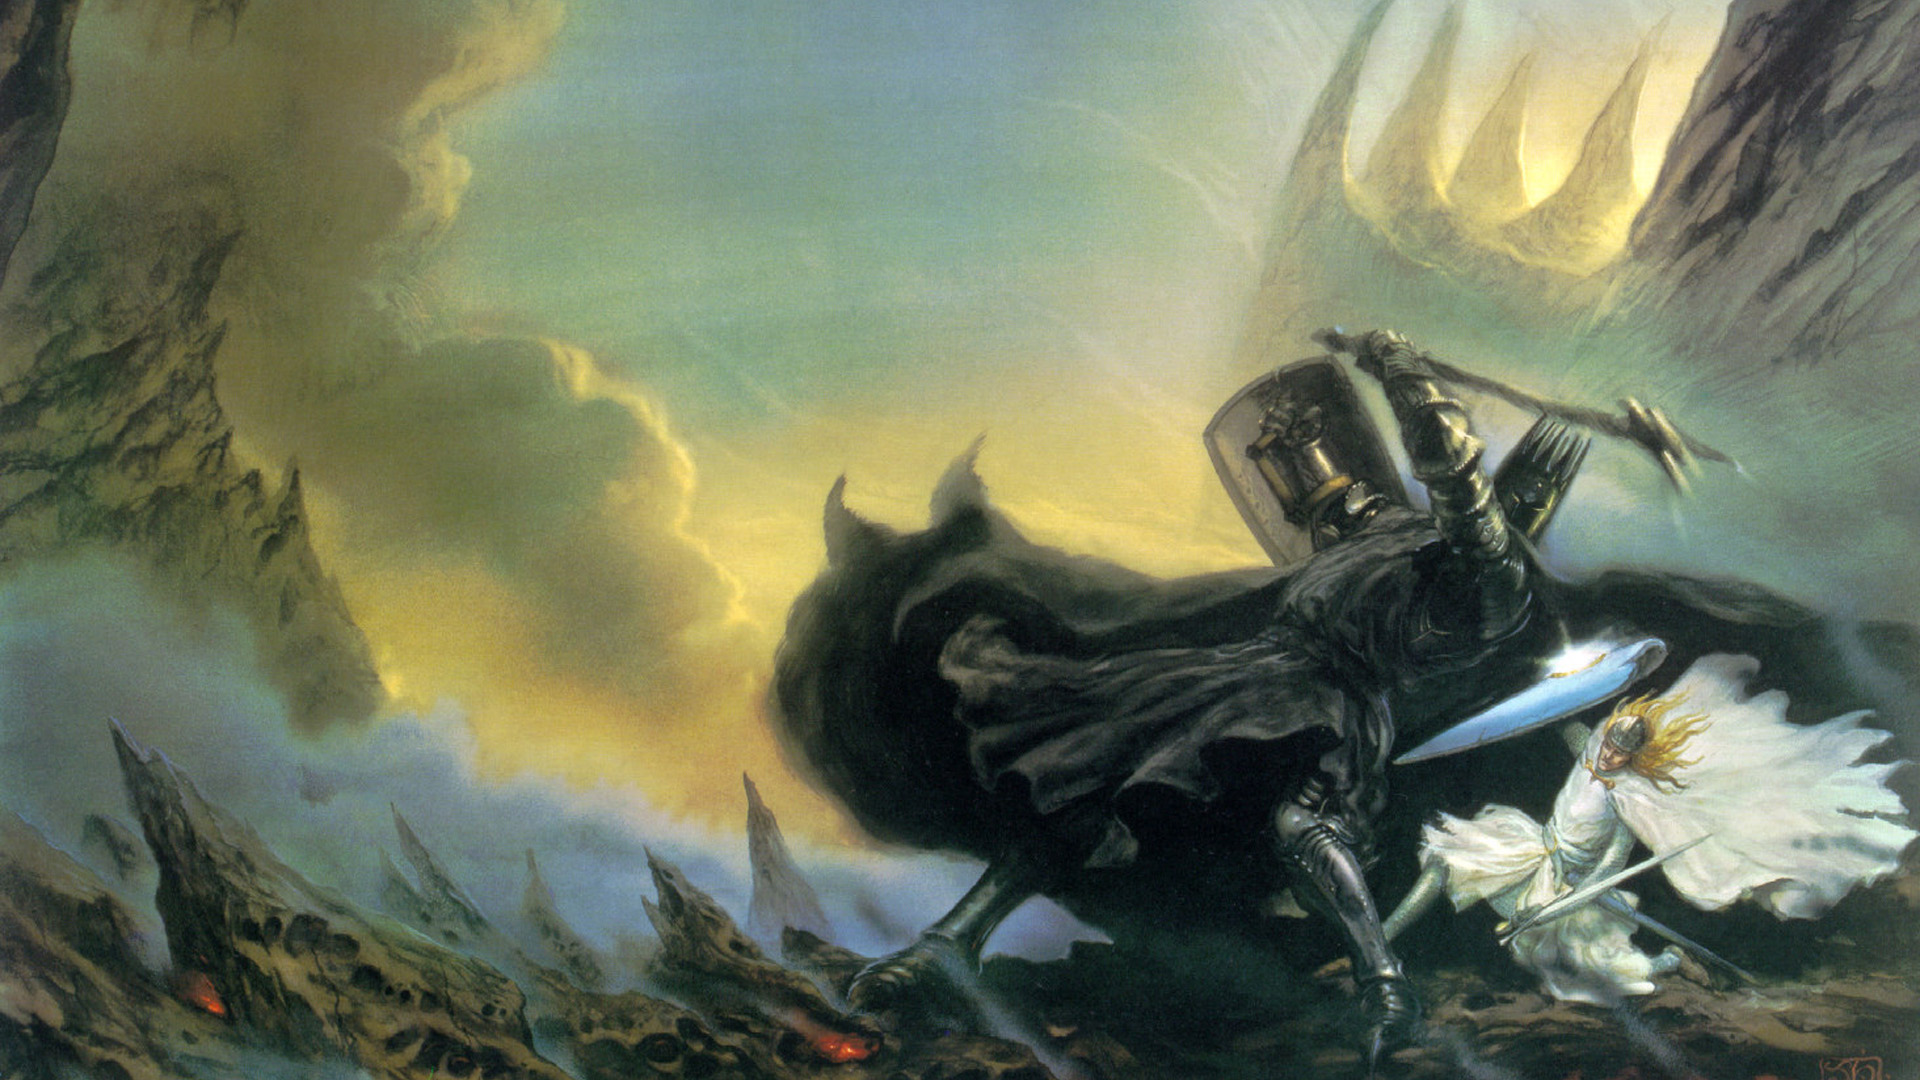 General 1920x1080 J. R. R. Tolkien The Silmarillion Morgoth fantasy art John Howe artwork Fingolfin